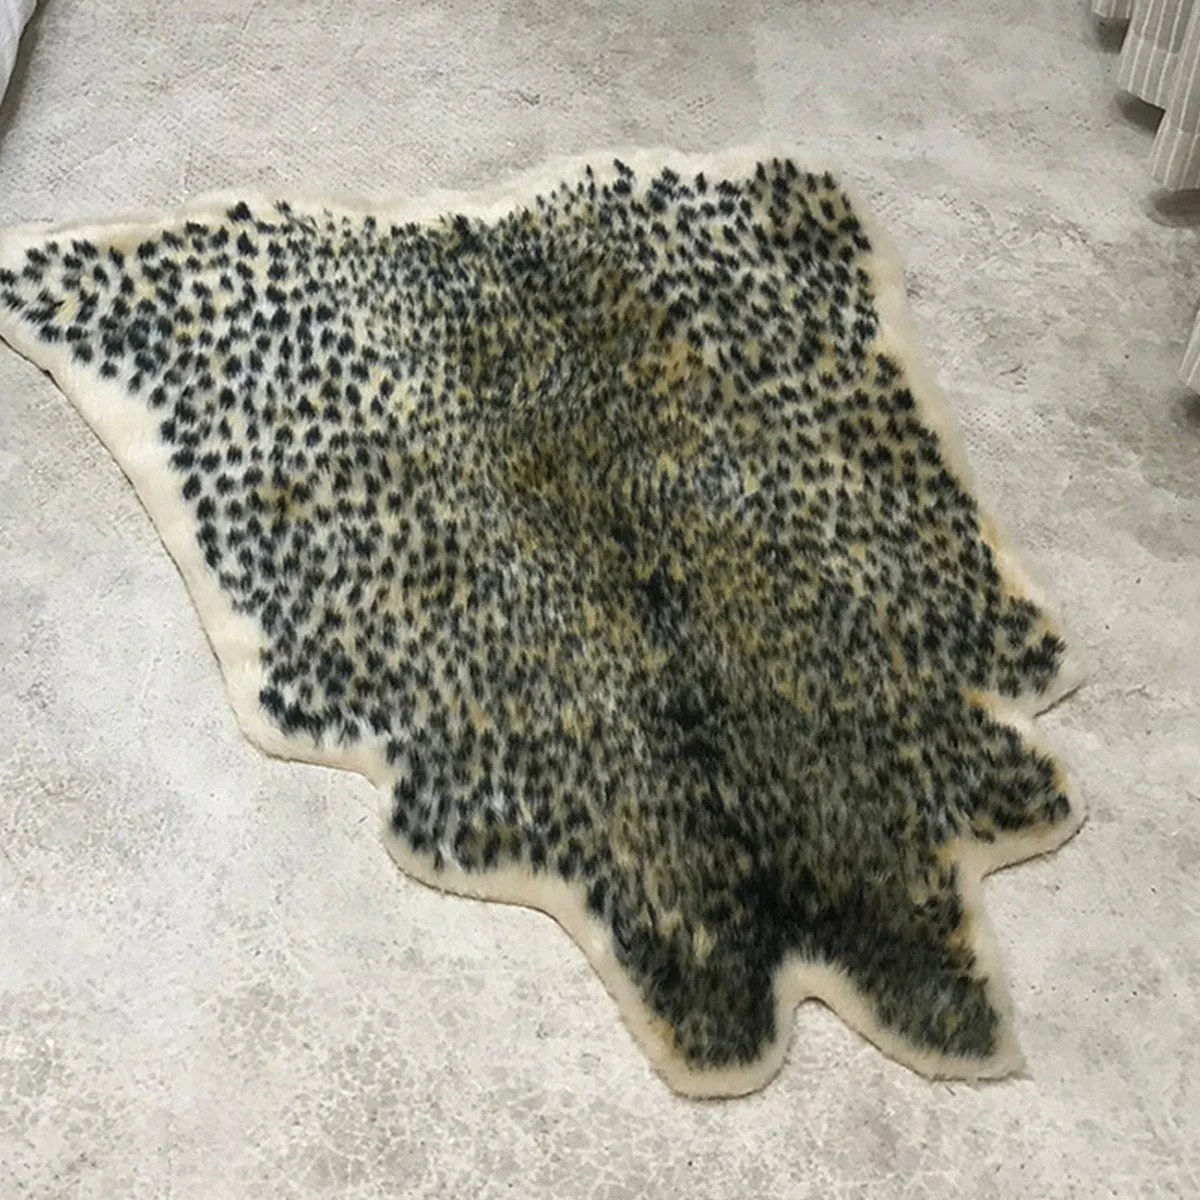 Леопардовый принт искусственная кожа коврик в виде шкуры с животным принтом